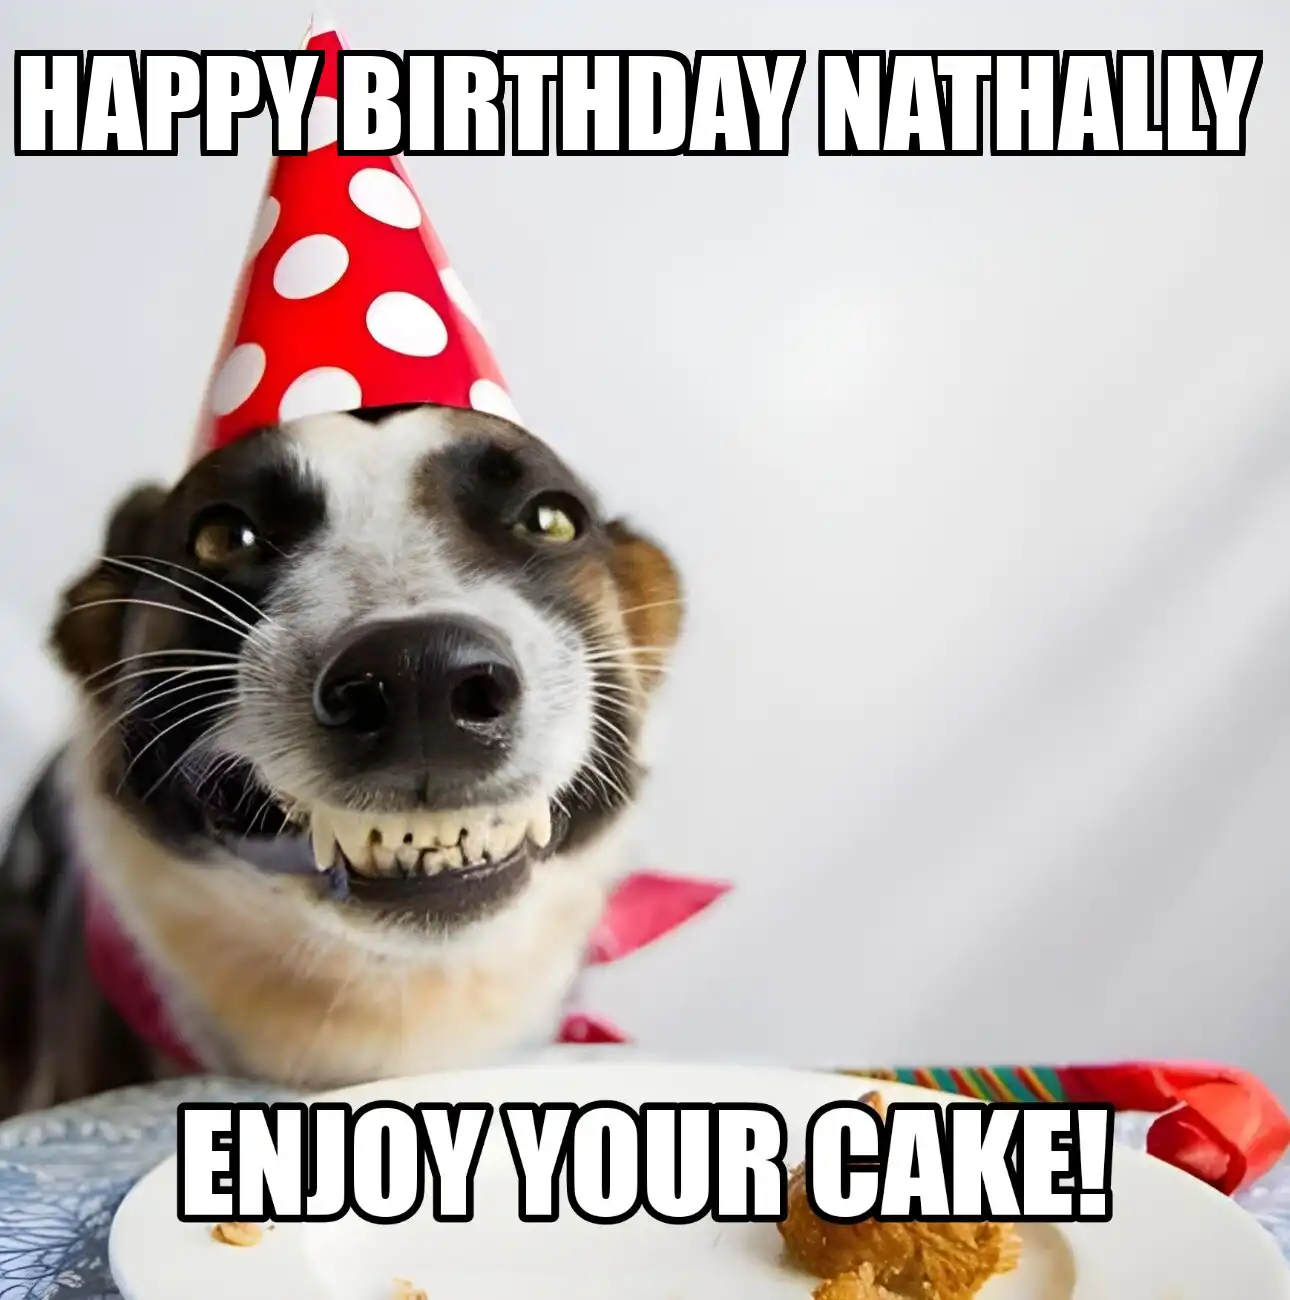 Happy Birthday Nathally Enjoy Your Cake Dog Meme